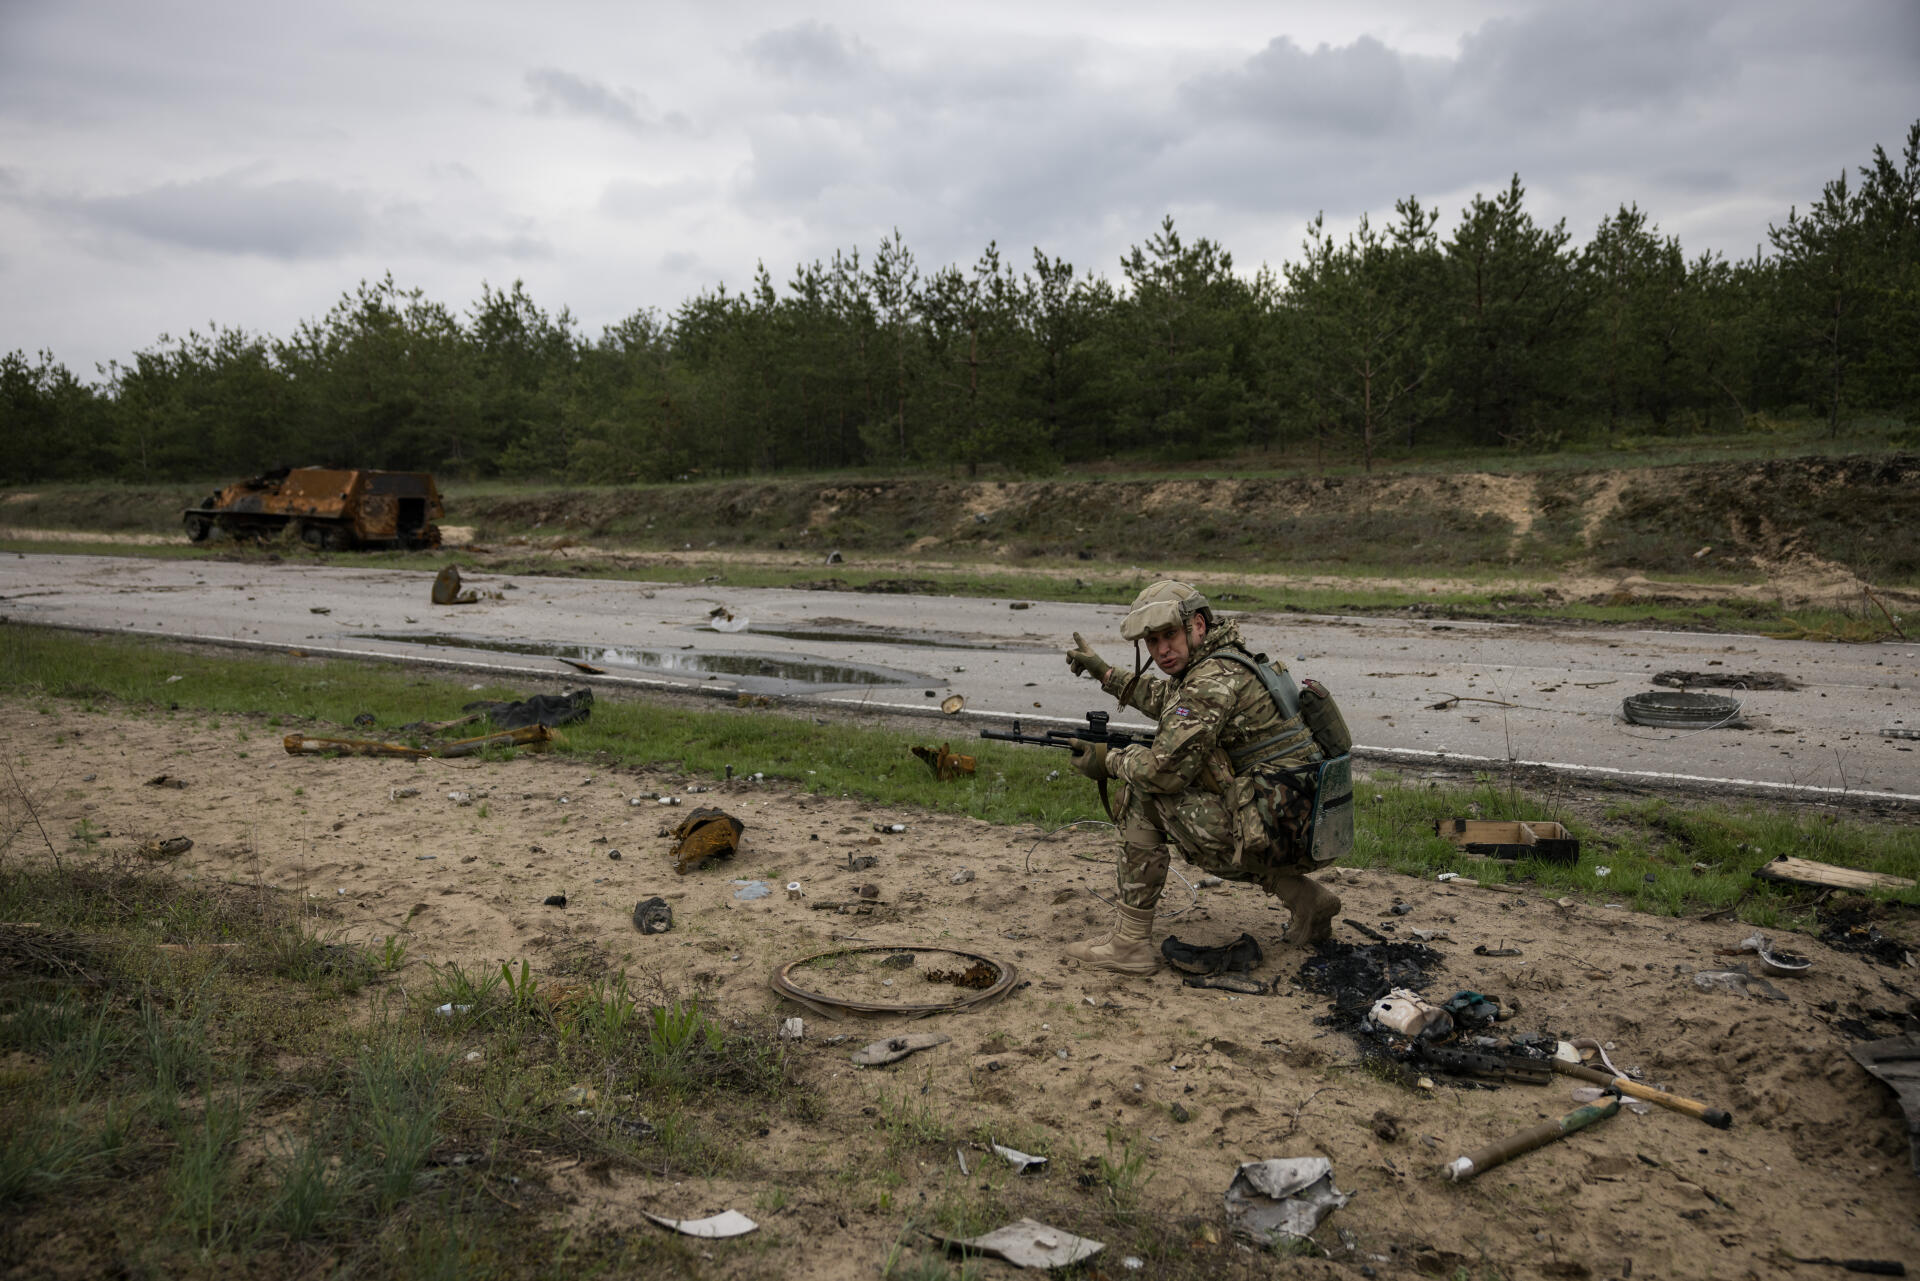 Un militaire ukrainien en première ligne sur le front, dans le Donbass (Ukraine), le 22 avril 2022. Au loin, un blindé russe carbonisé.